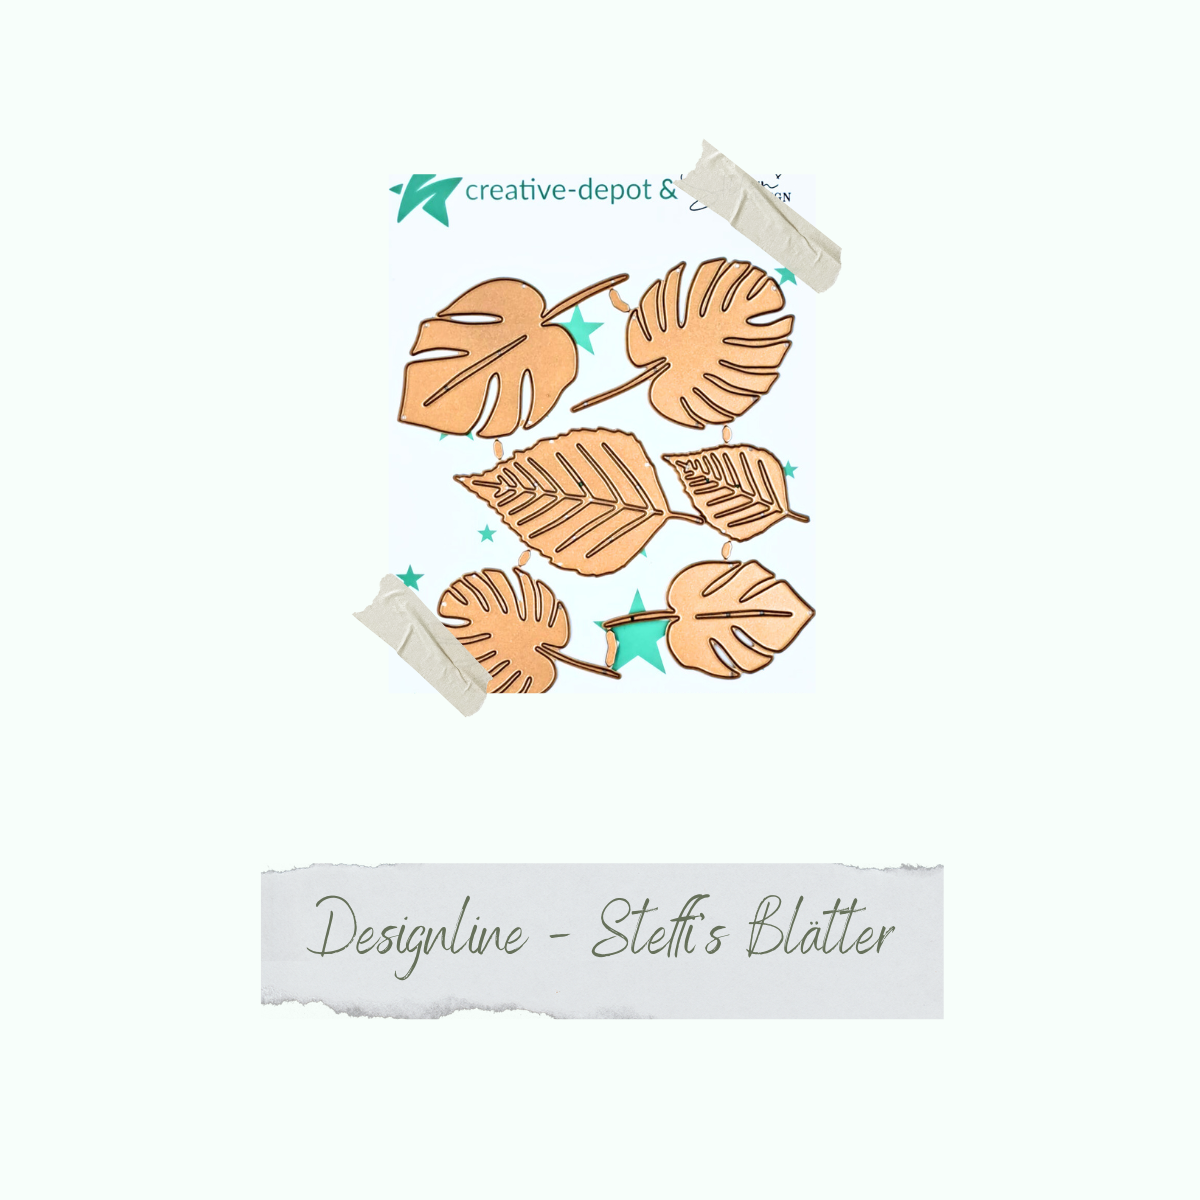 Die - Designline - Steffi's Blätter